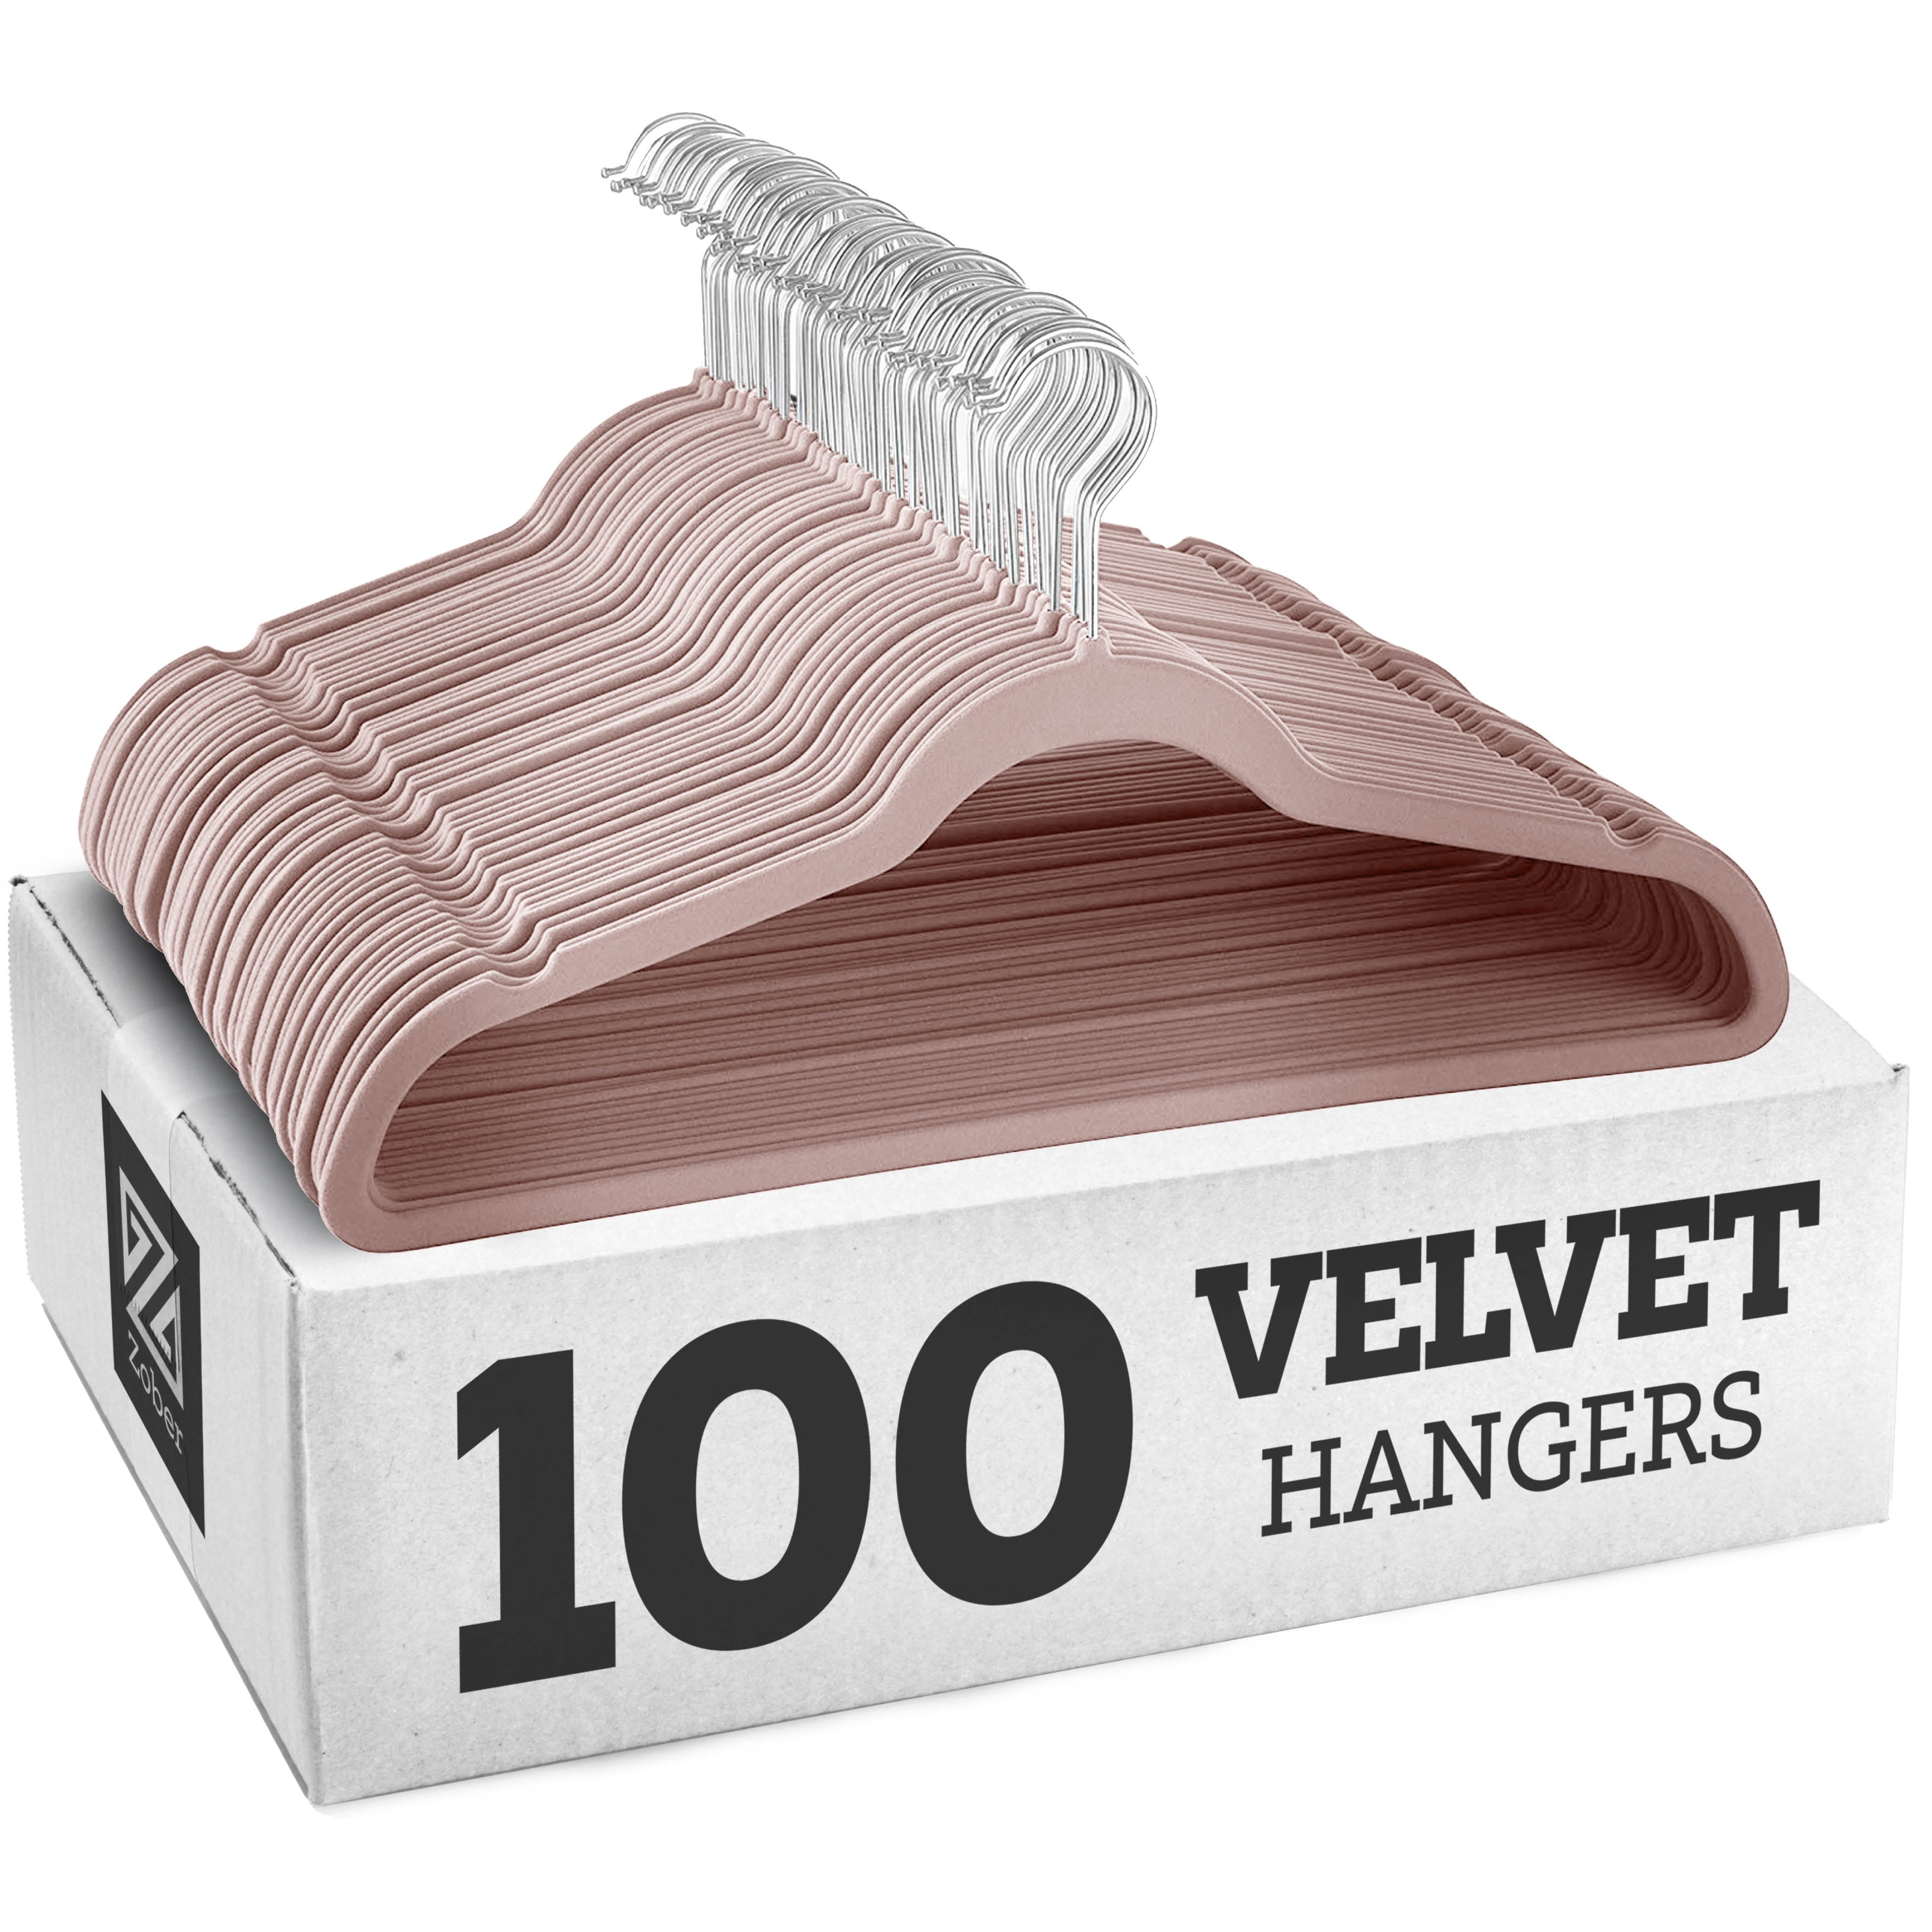 OSTO Pink Velvet Hangers 100-Pack OV-113-100-BLSH-H - The Home Depot